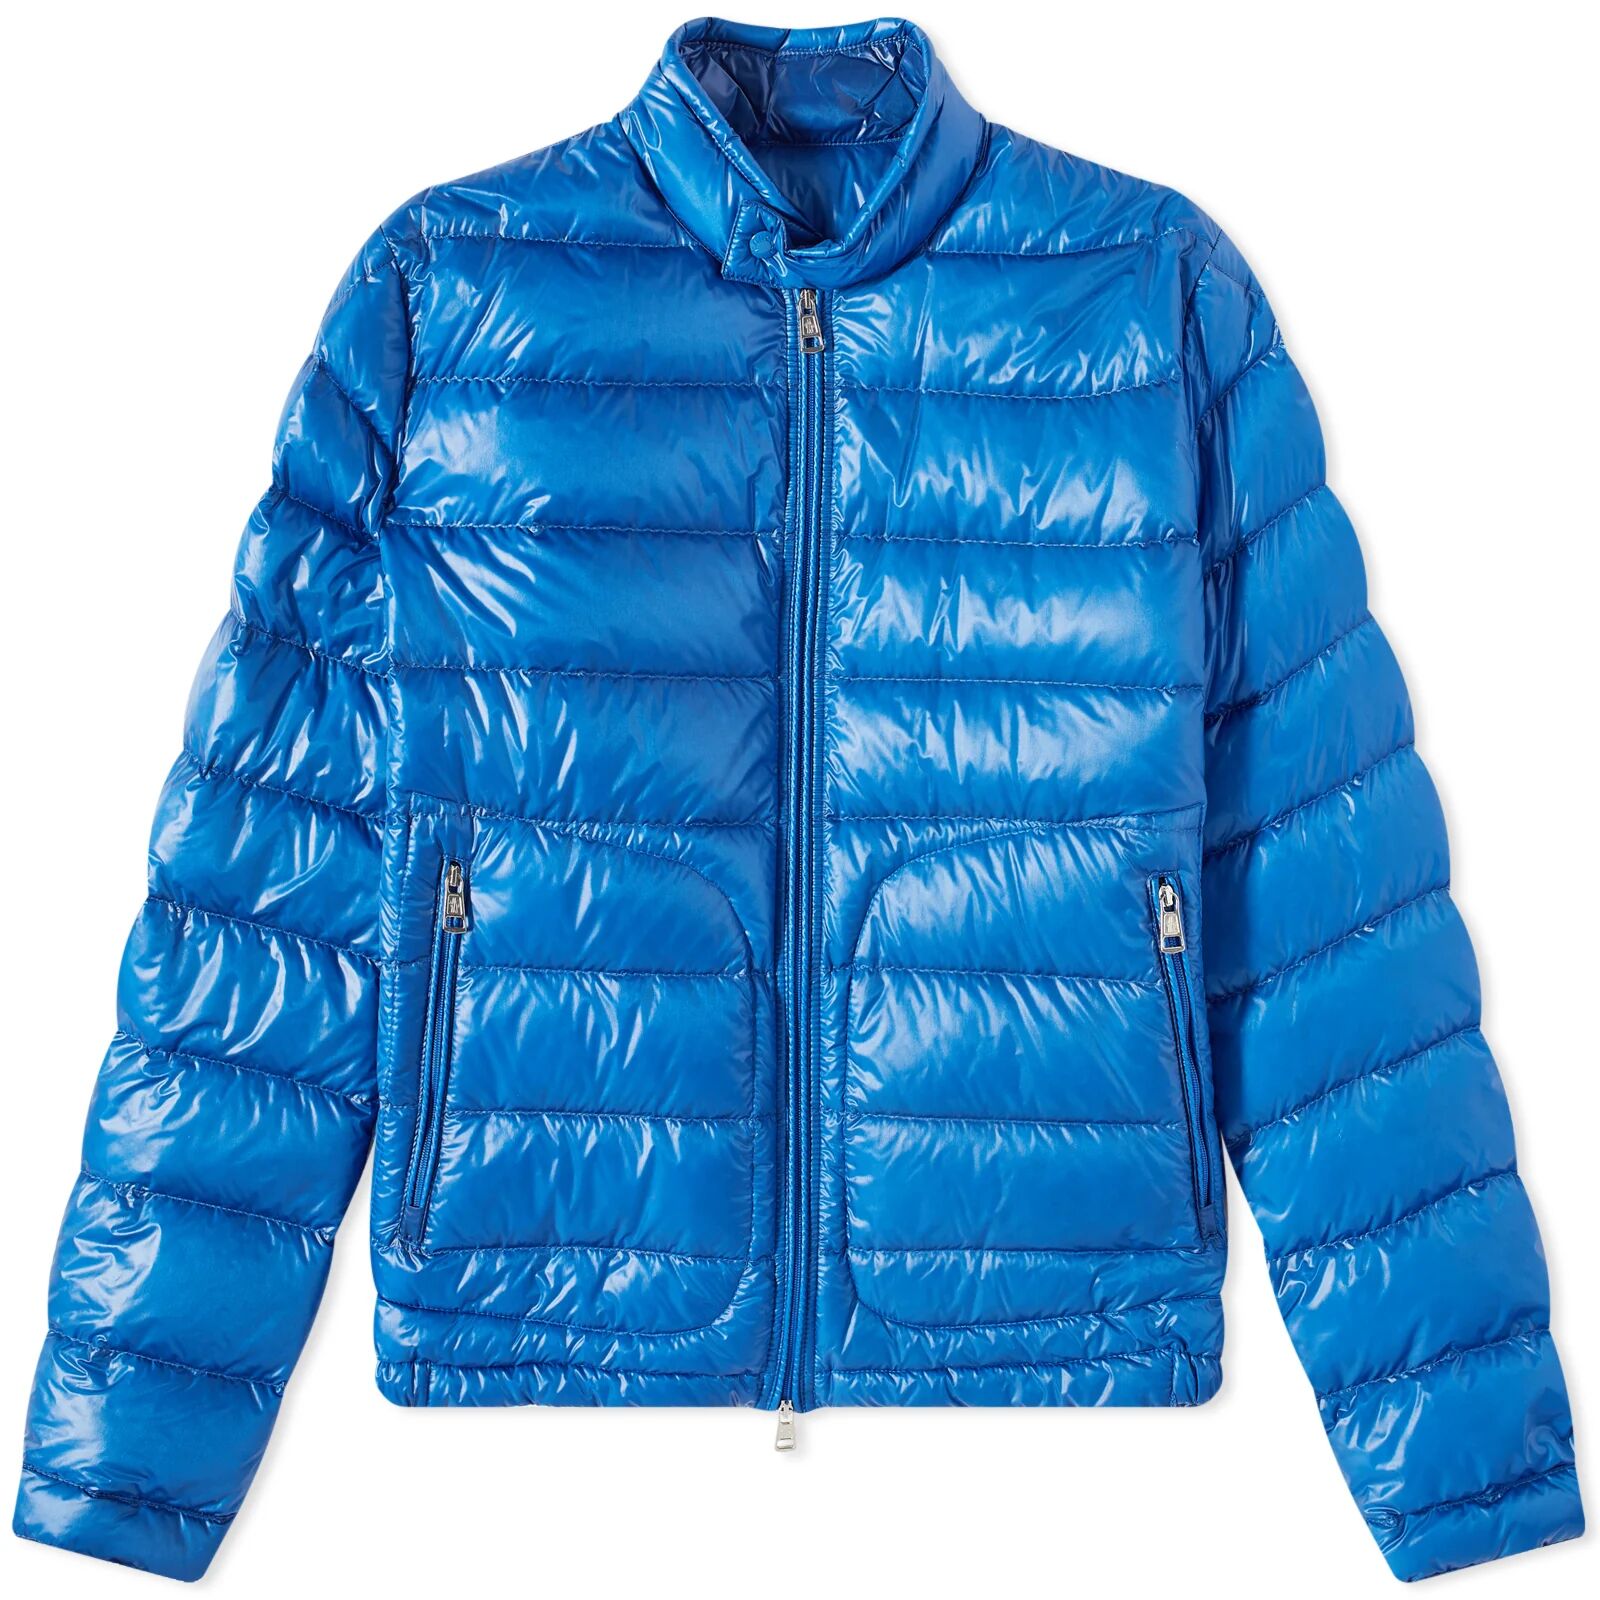 Moncler Men's Acorus Down Jacket in Blue, Size XX-Large